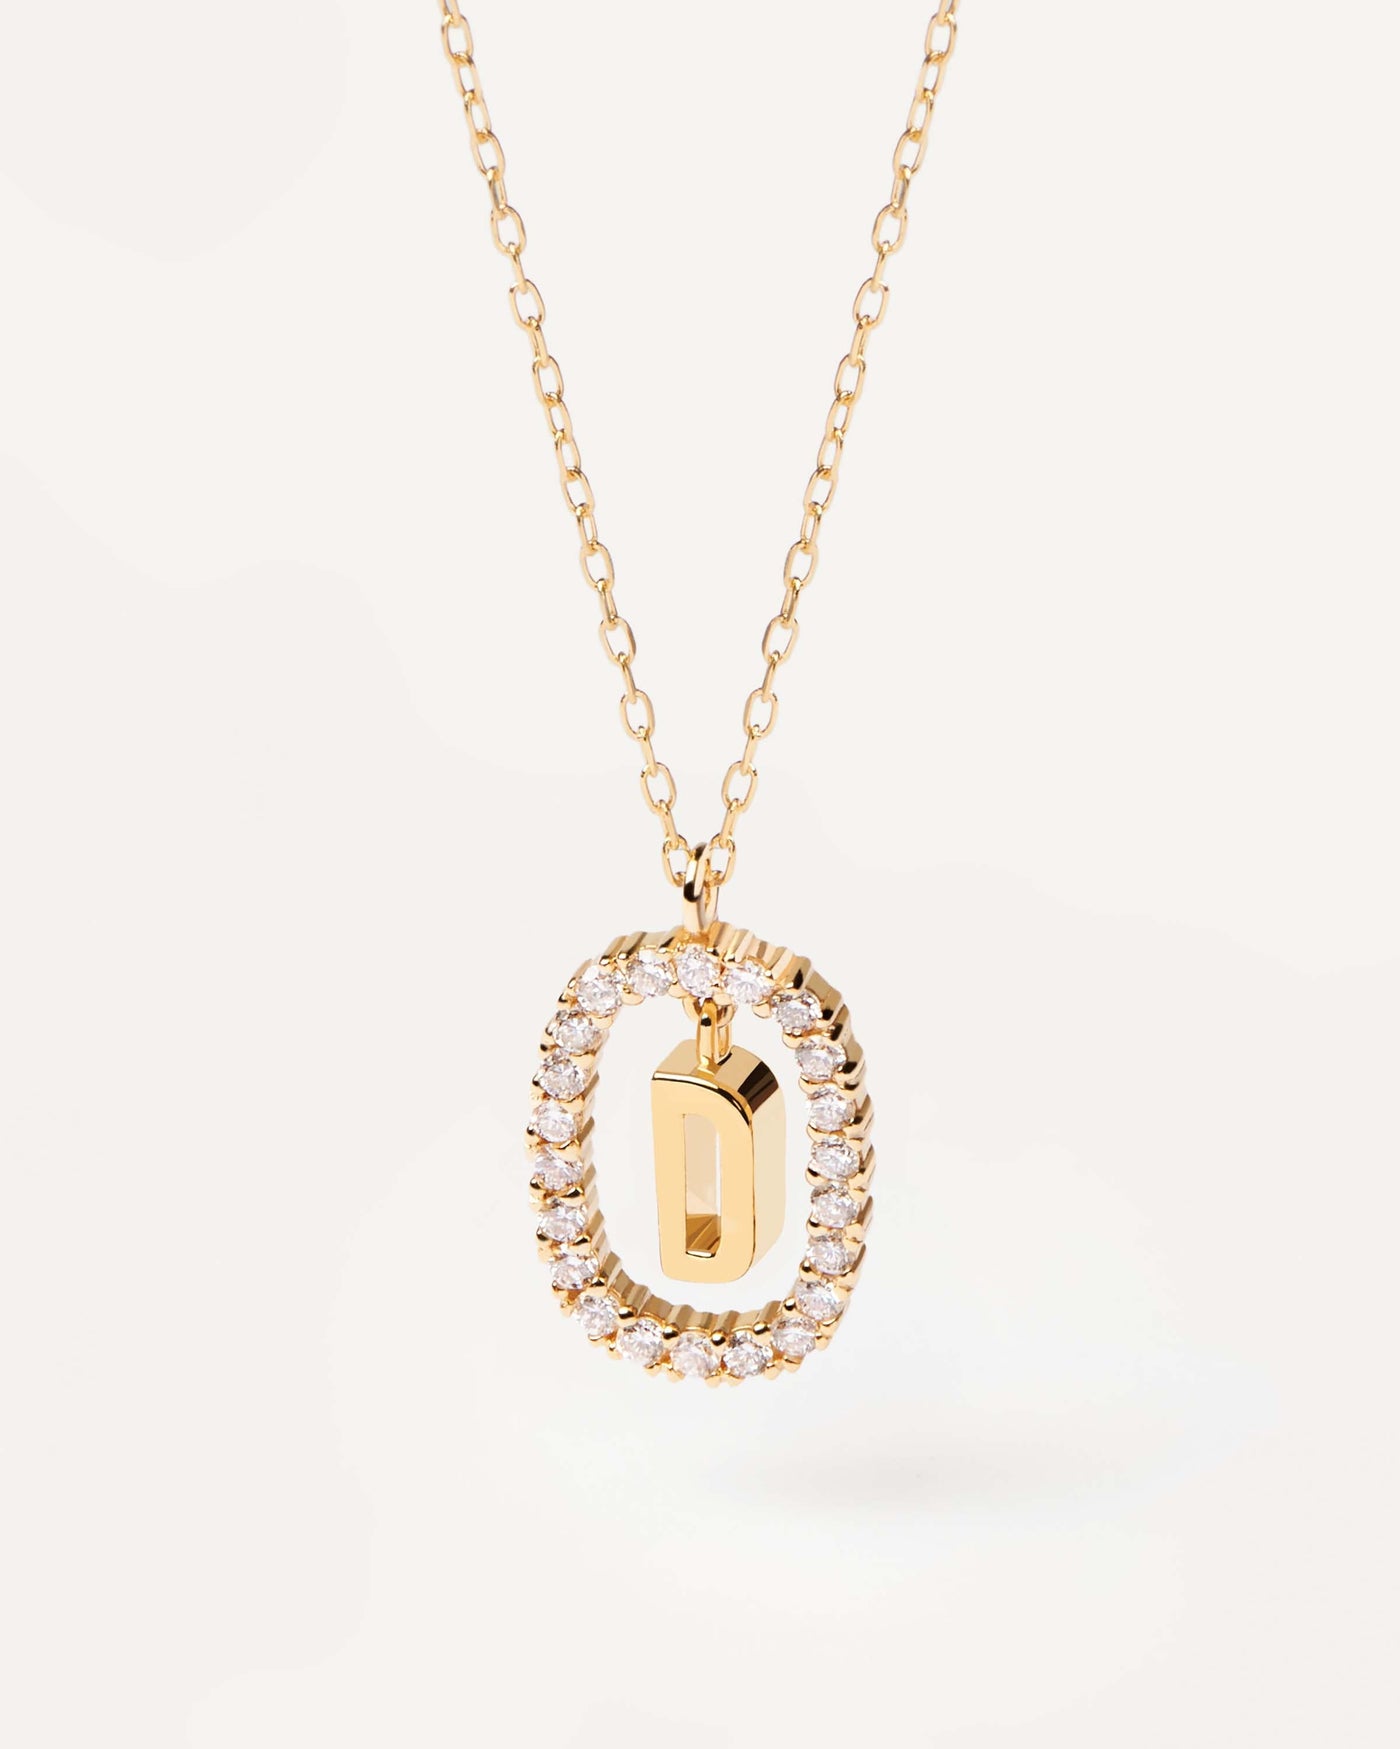 GoldHalskette mit Diamanten Buchstabe D. Erstes D-Halskette in soliden Gelbgold, umkreist von 0,33 Karat-Labor-Diamanten. Erhalten Sie die neuesten Produkte von PDPAOLA. Geben Sie Ihre Bestellung sicher auf und erhalten Sie diesen Bestseller.